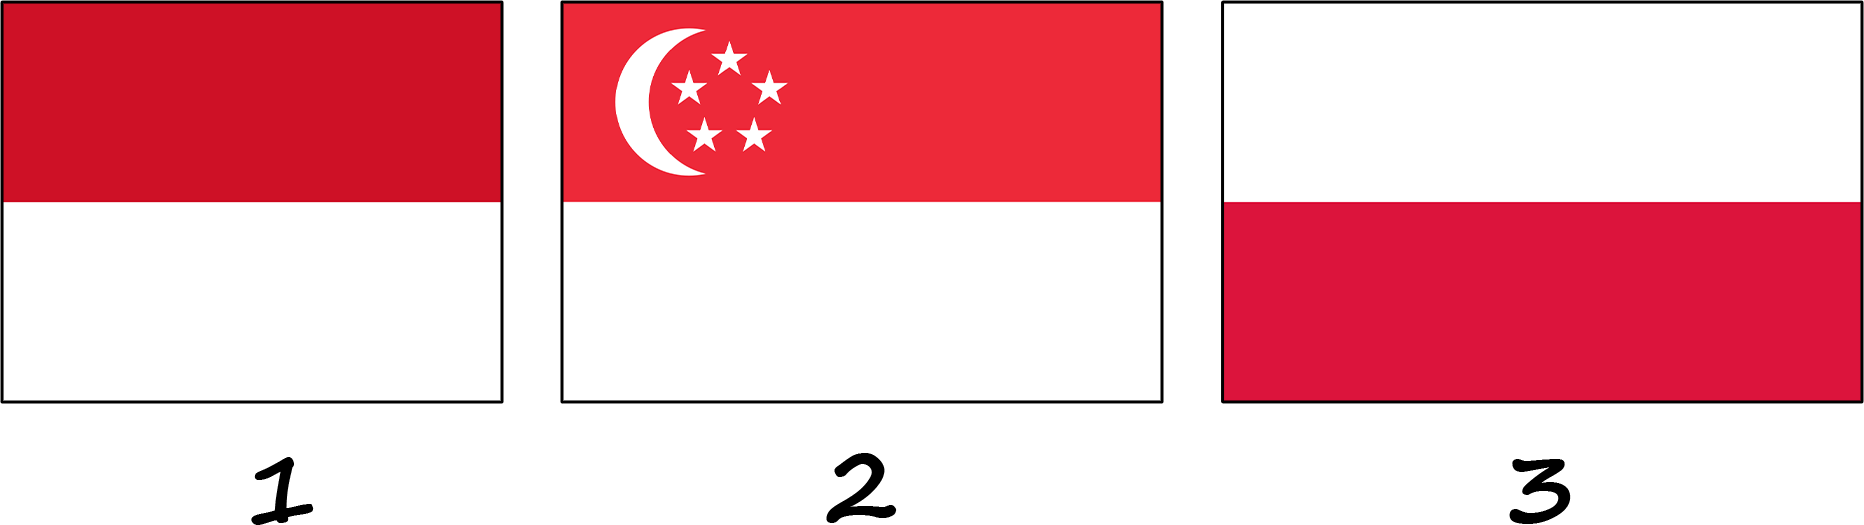 Quels sont les drapeaux qui ressemblent au drapeau rouge et blanc de l'Indonésie ?